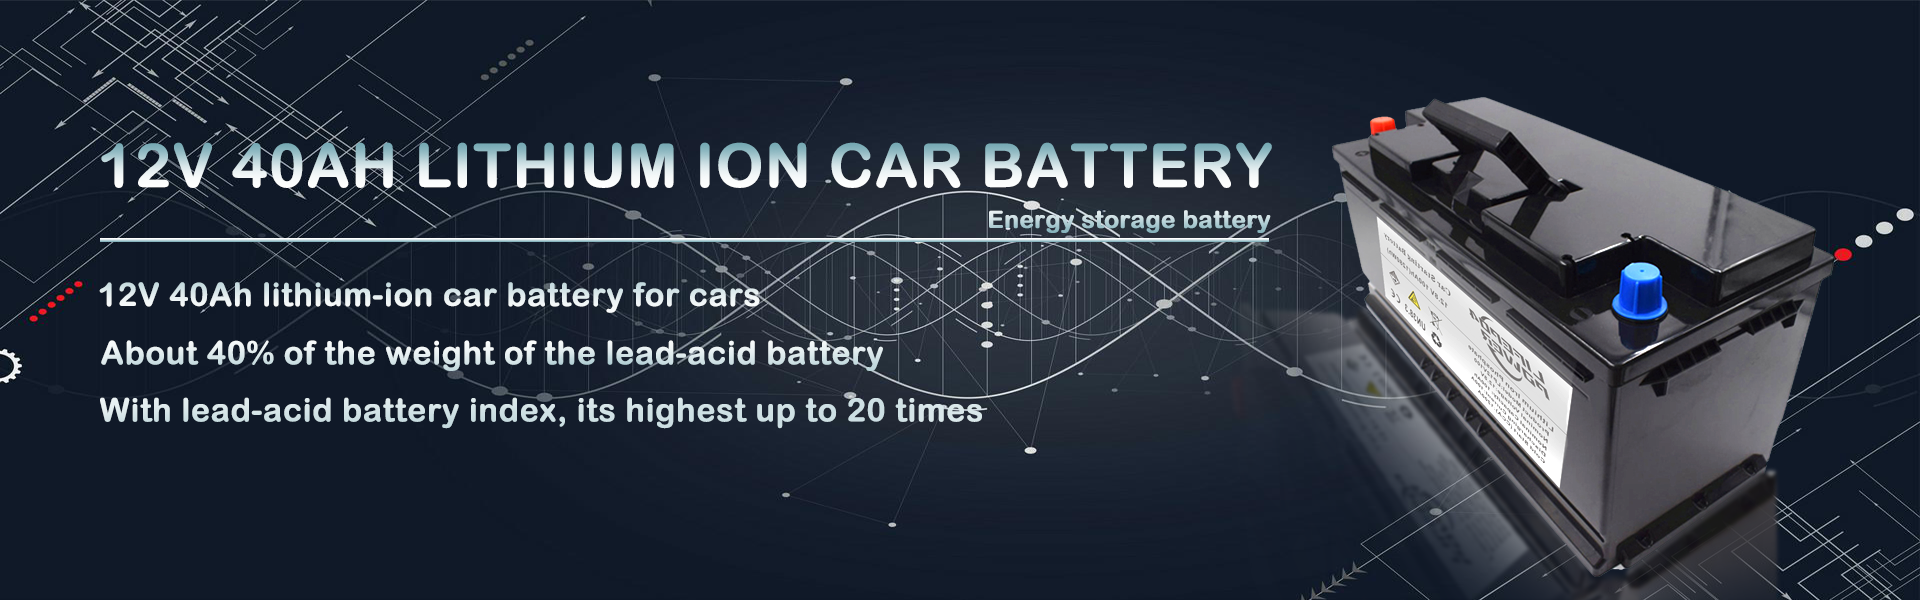 12V 40Ah lithium-ion autobatterij